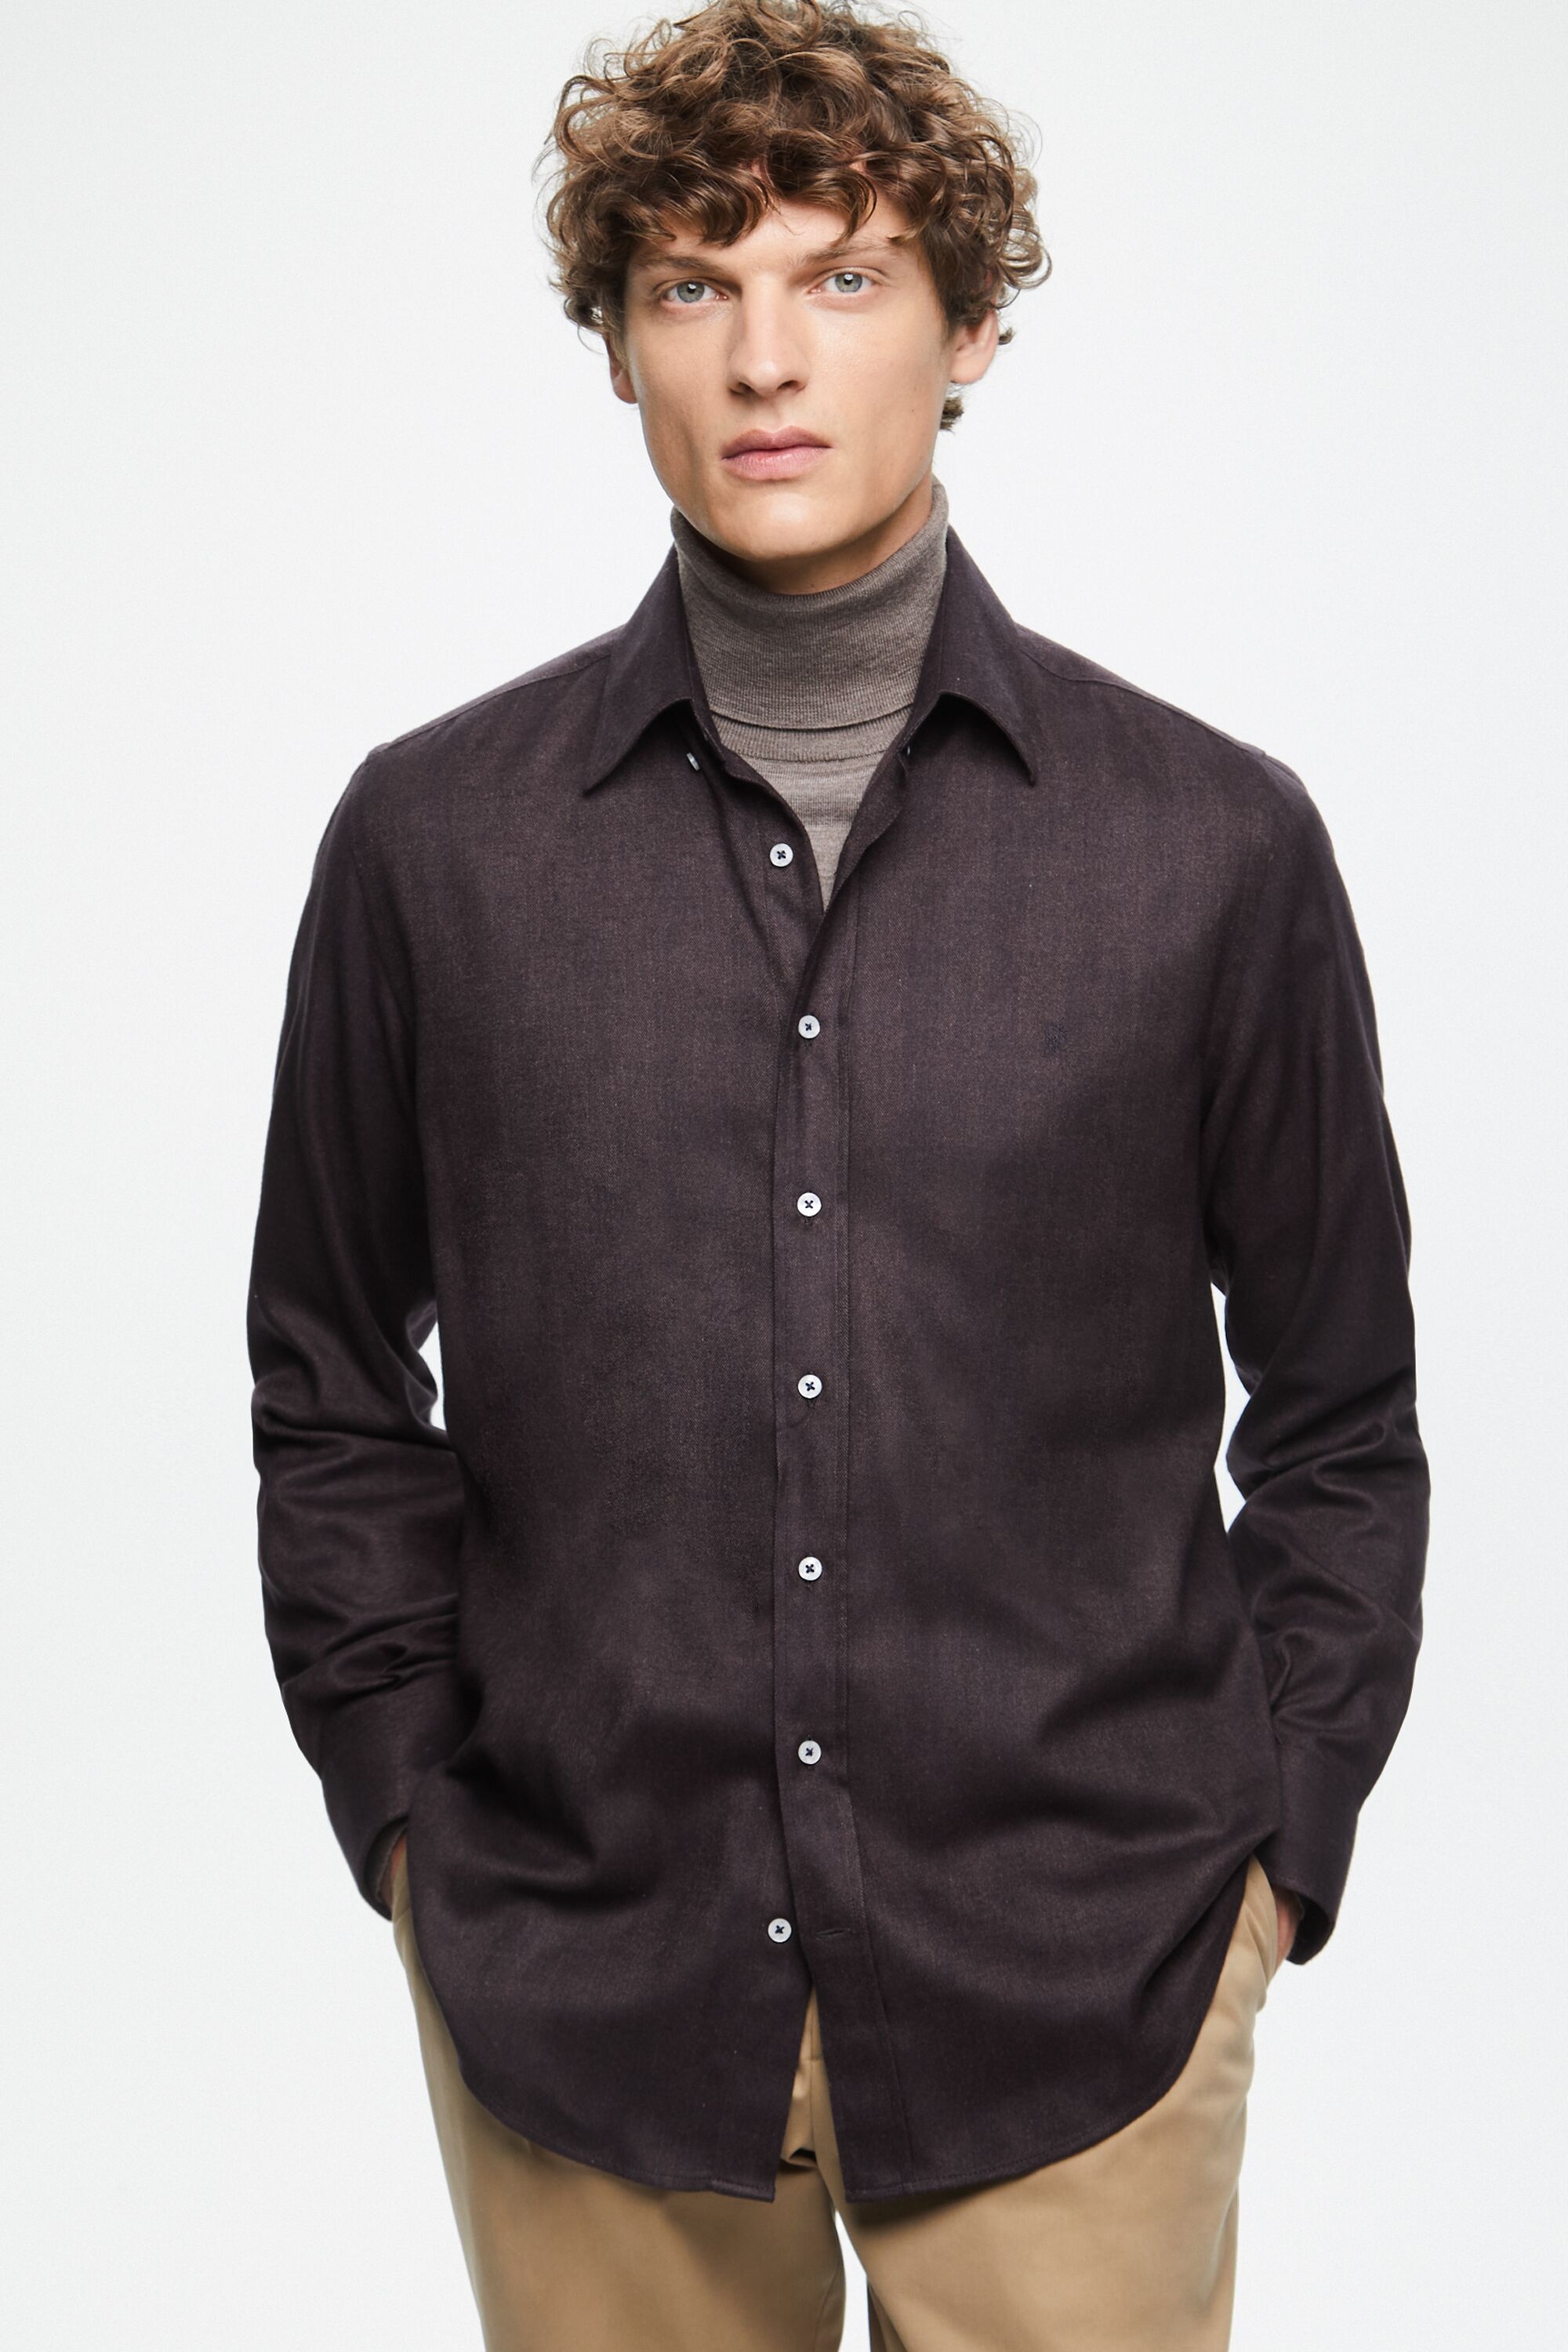 Herringbone flannel shirt